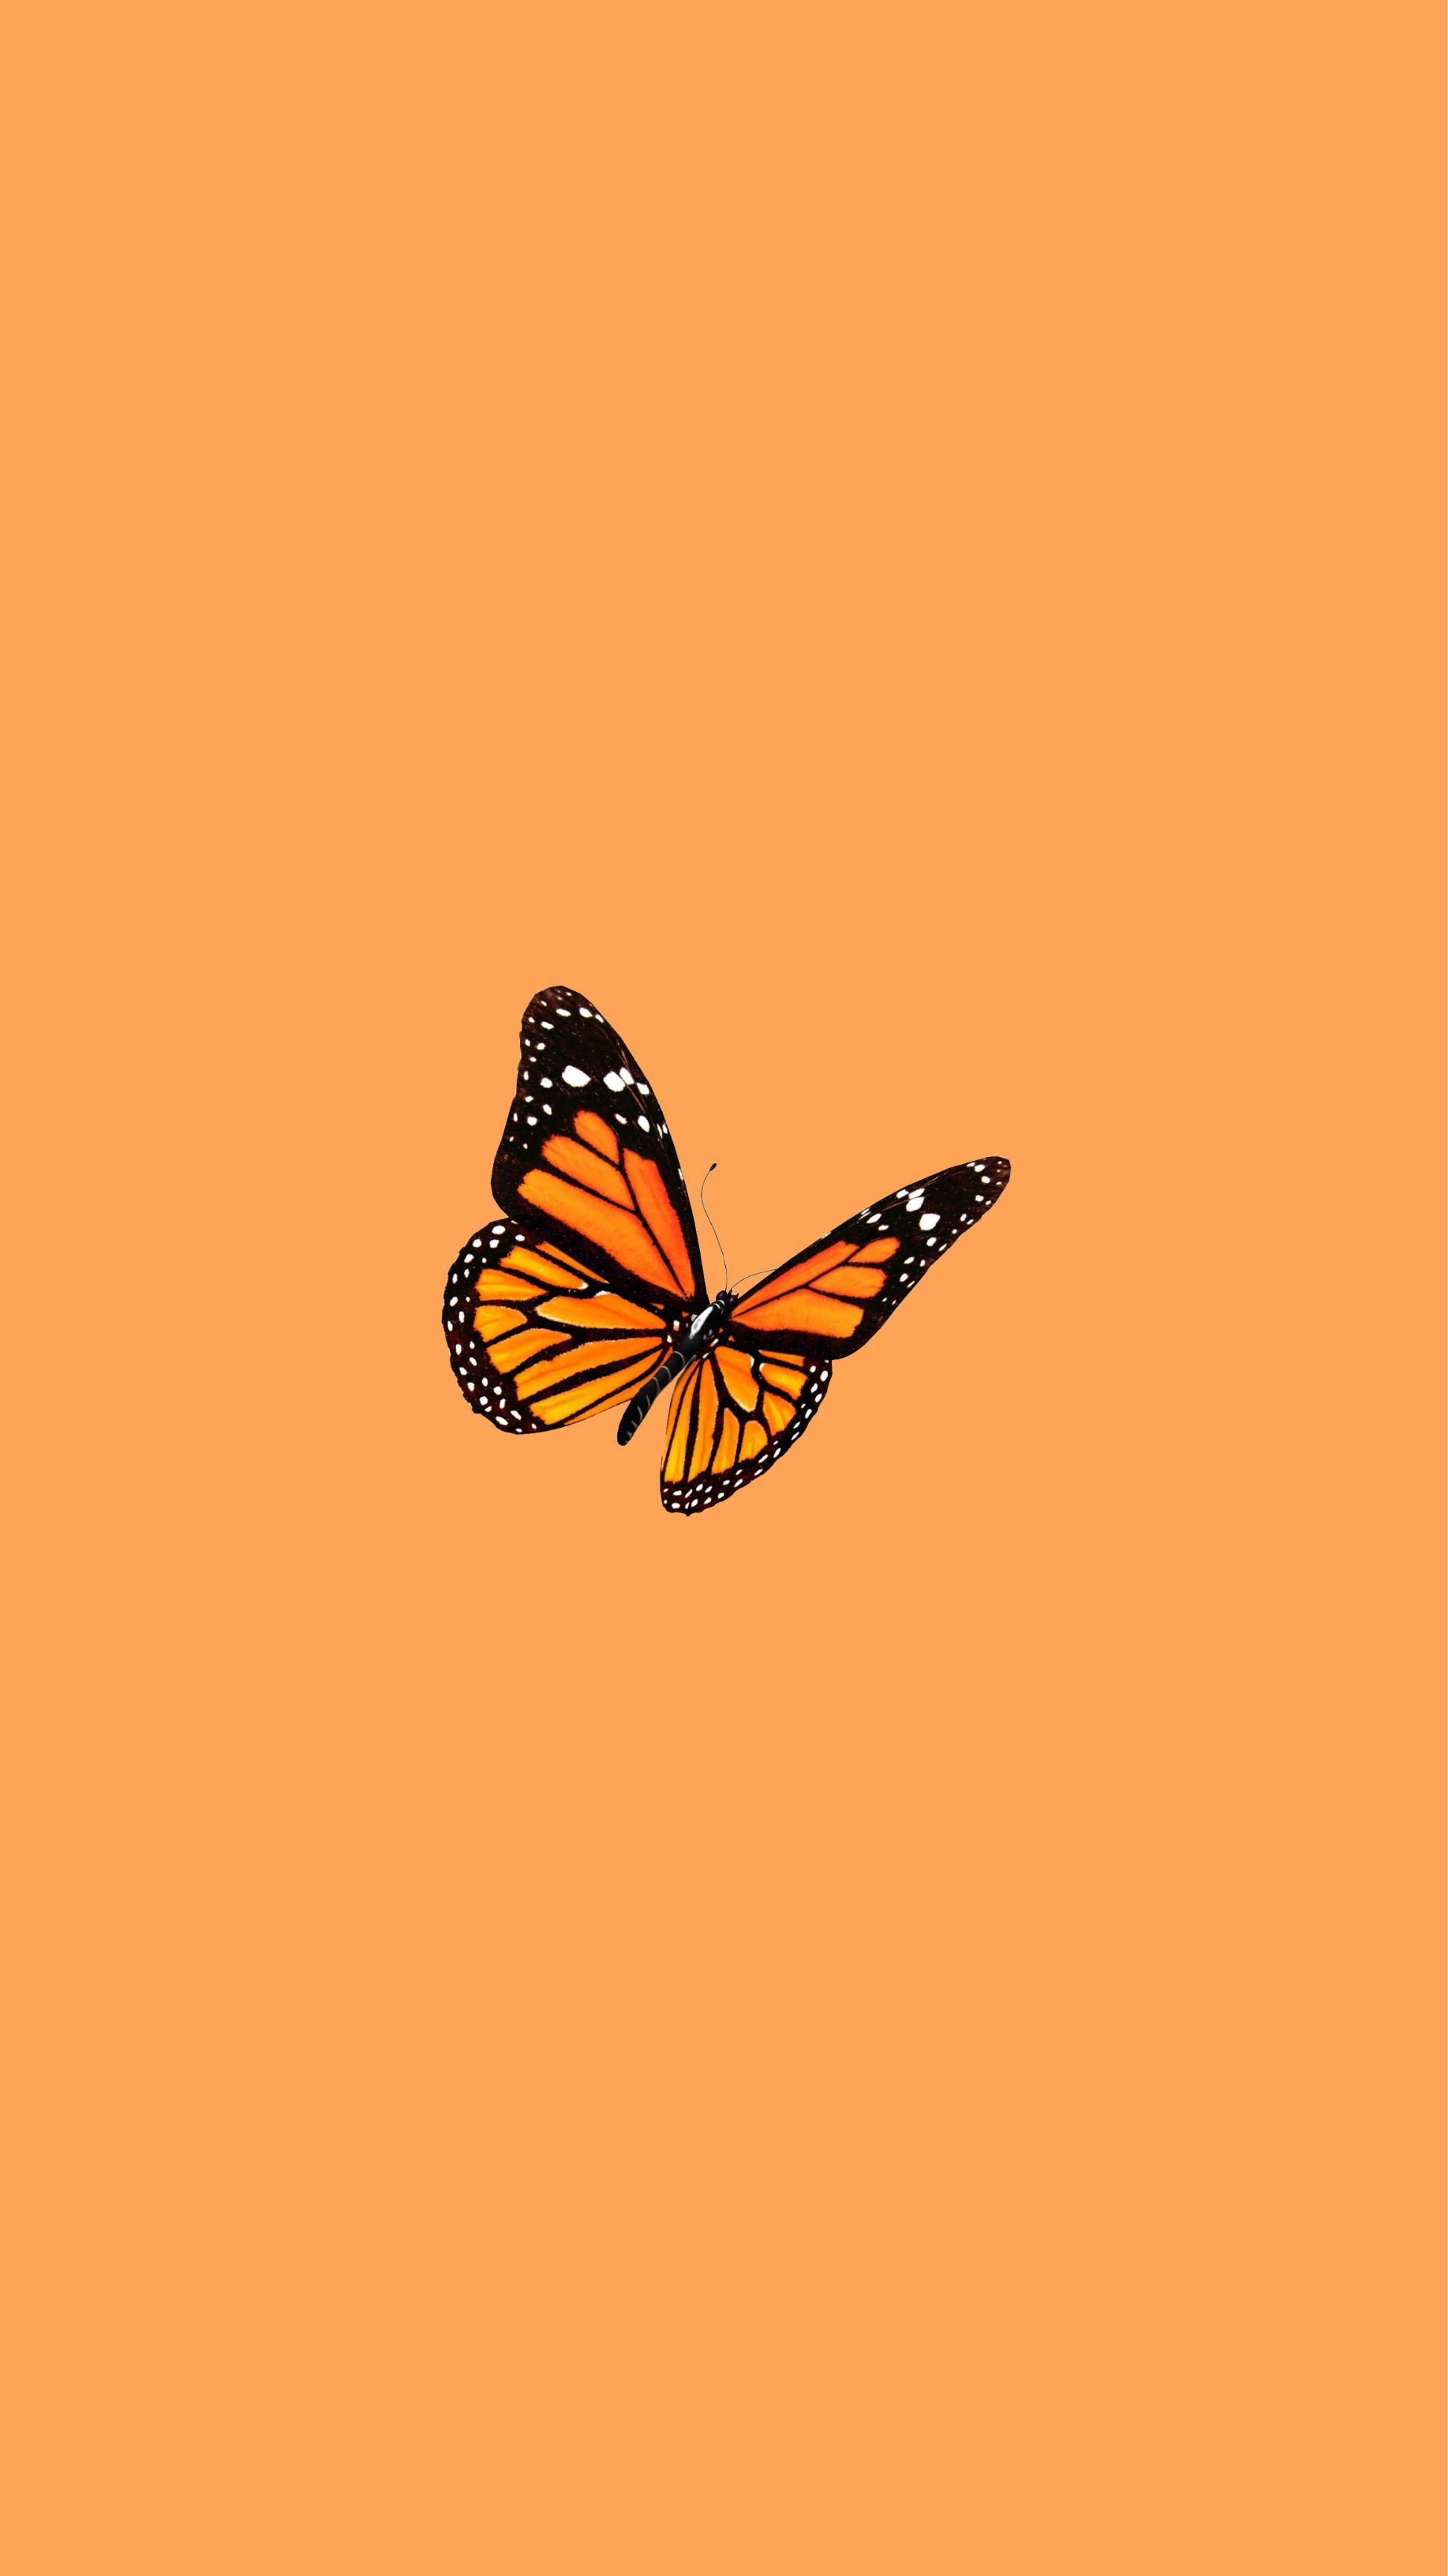 Aesthetic Orange Butterfly Wallpaper Free Aesthetic Orange Butterfly Background